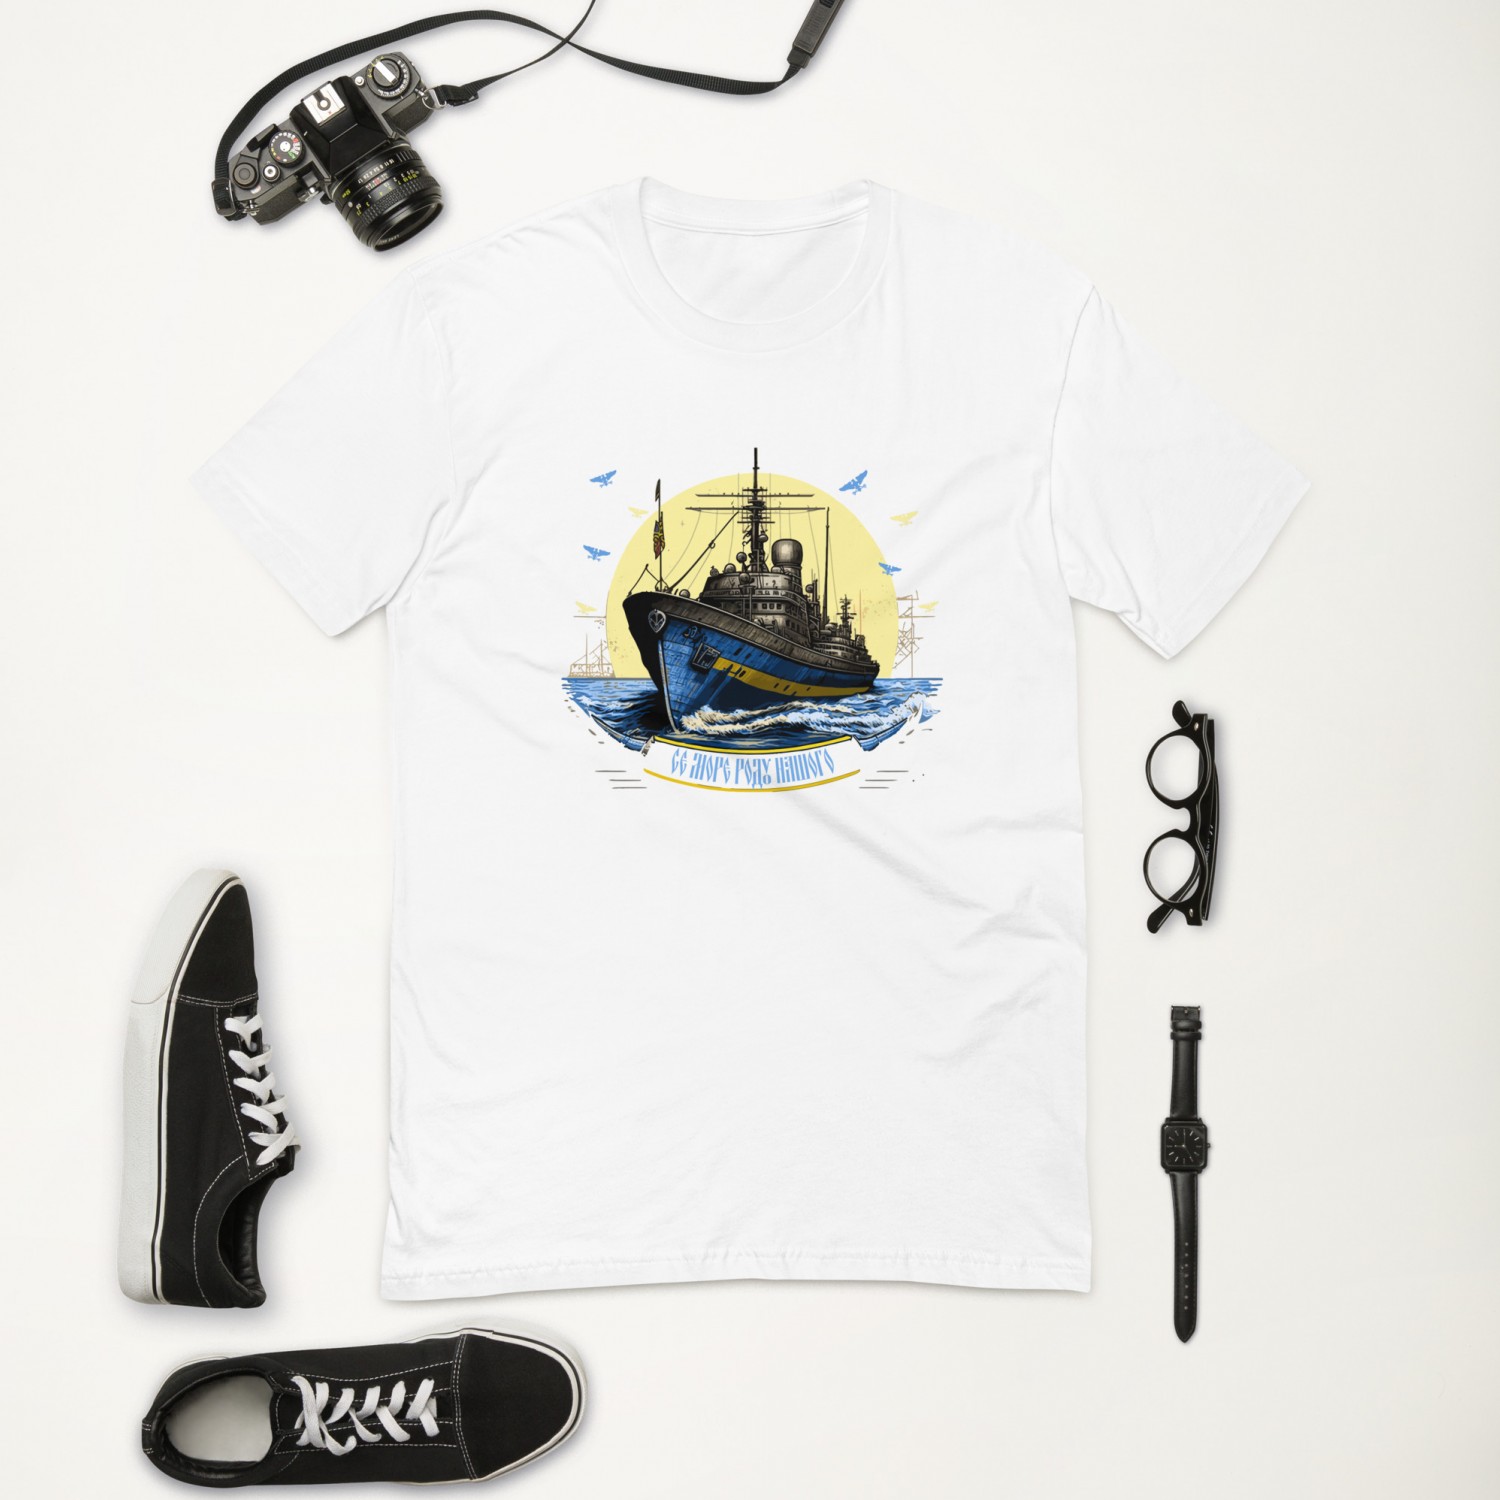 Kup koszulkę ze statkiem i morzem